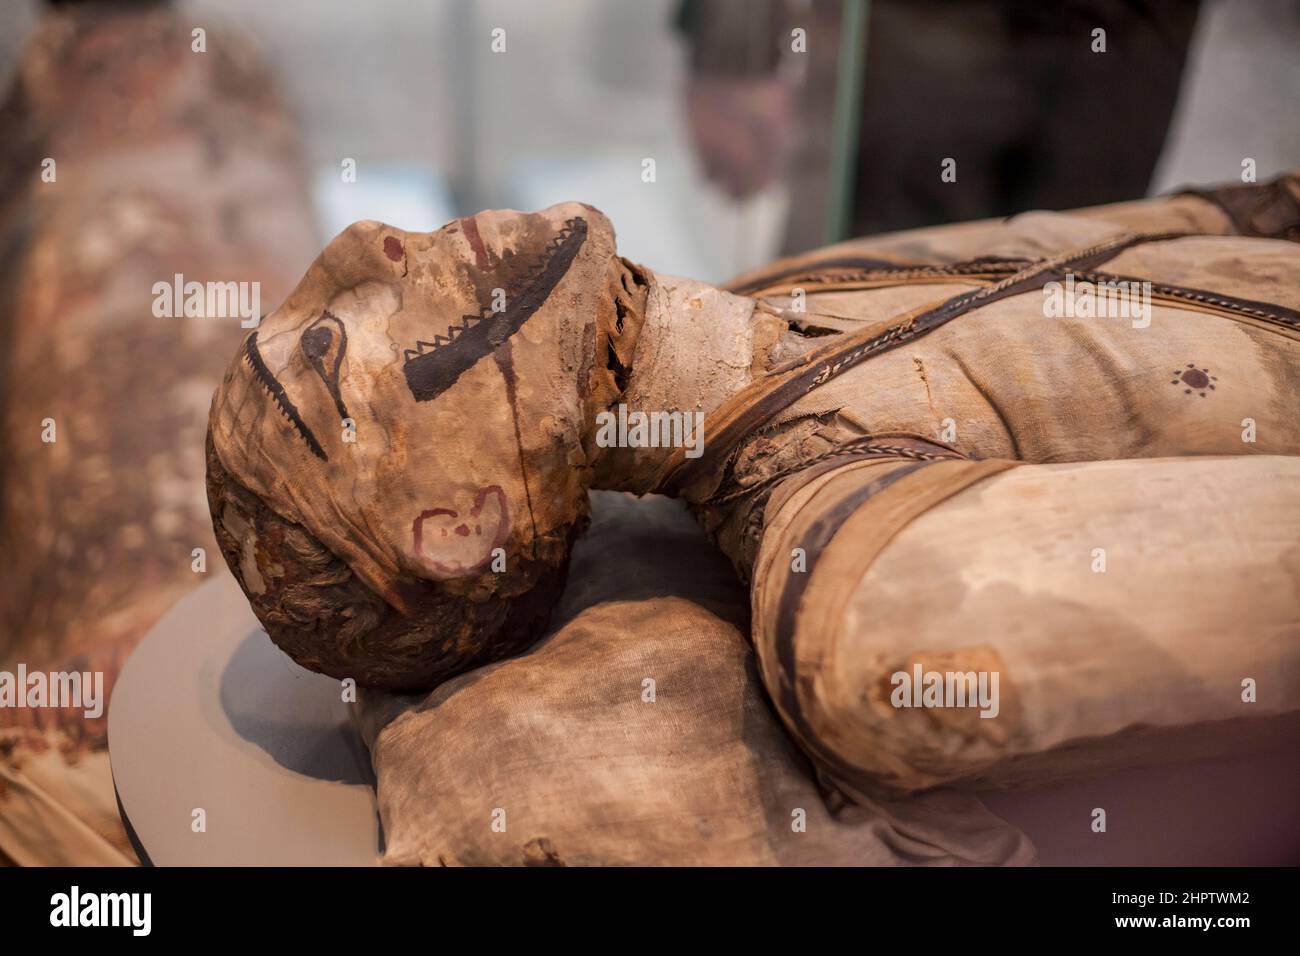 Cabeza pintada de una momia egipcia: Una momia egipcia antigua con el envoltorio de la superficie pintado para parecerse a la persona en su interior. Foto de stock